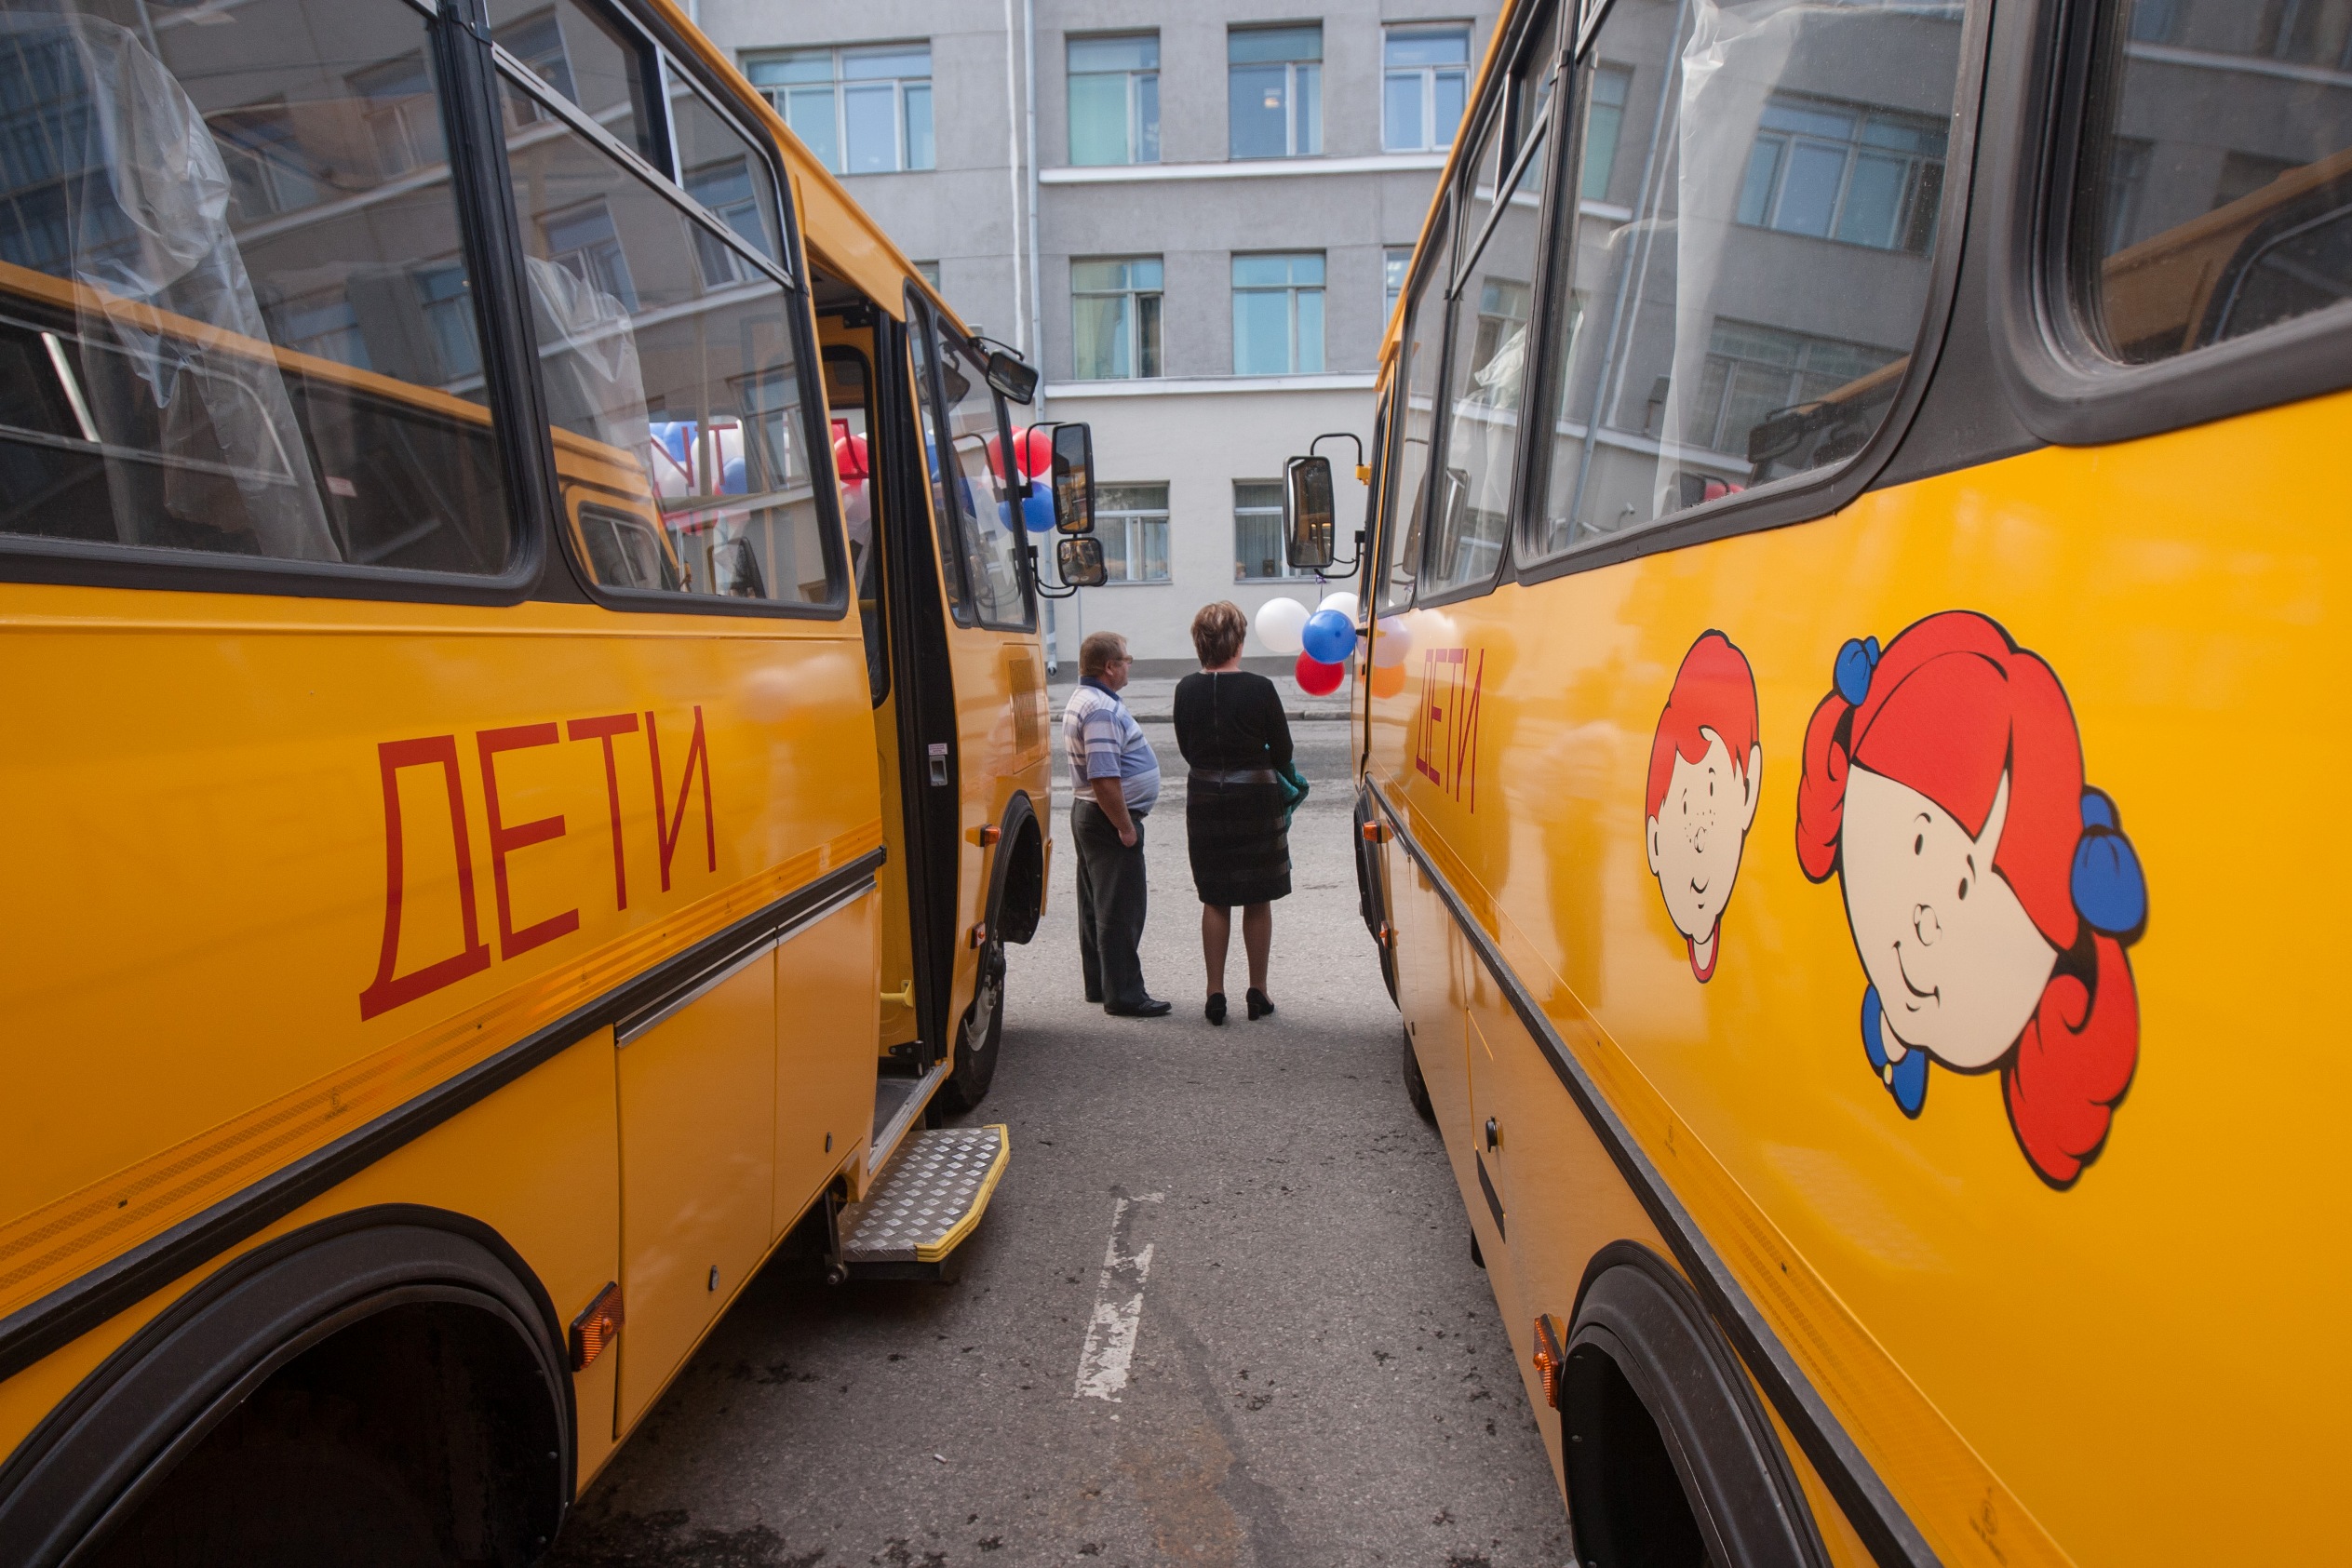 Автобус с детьми террористы